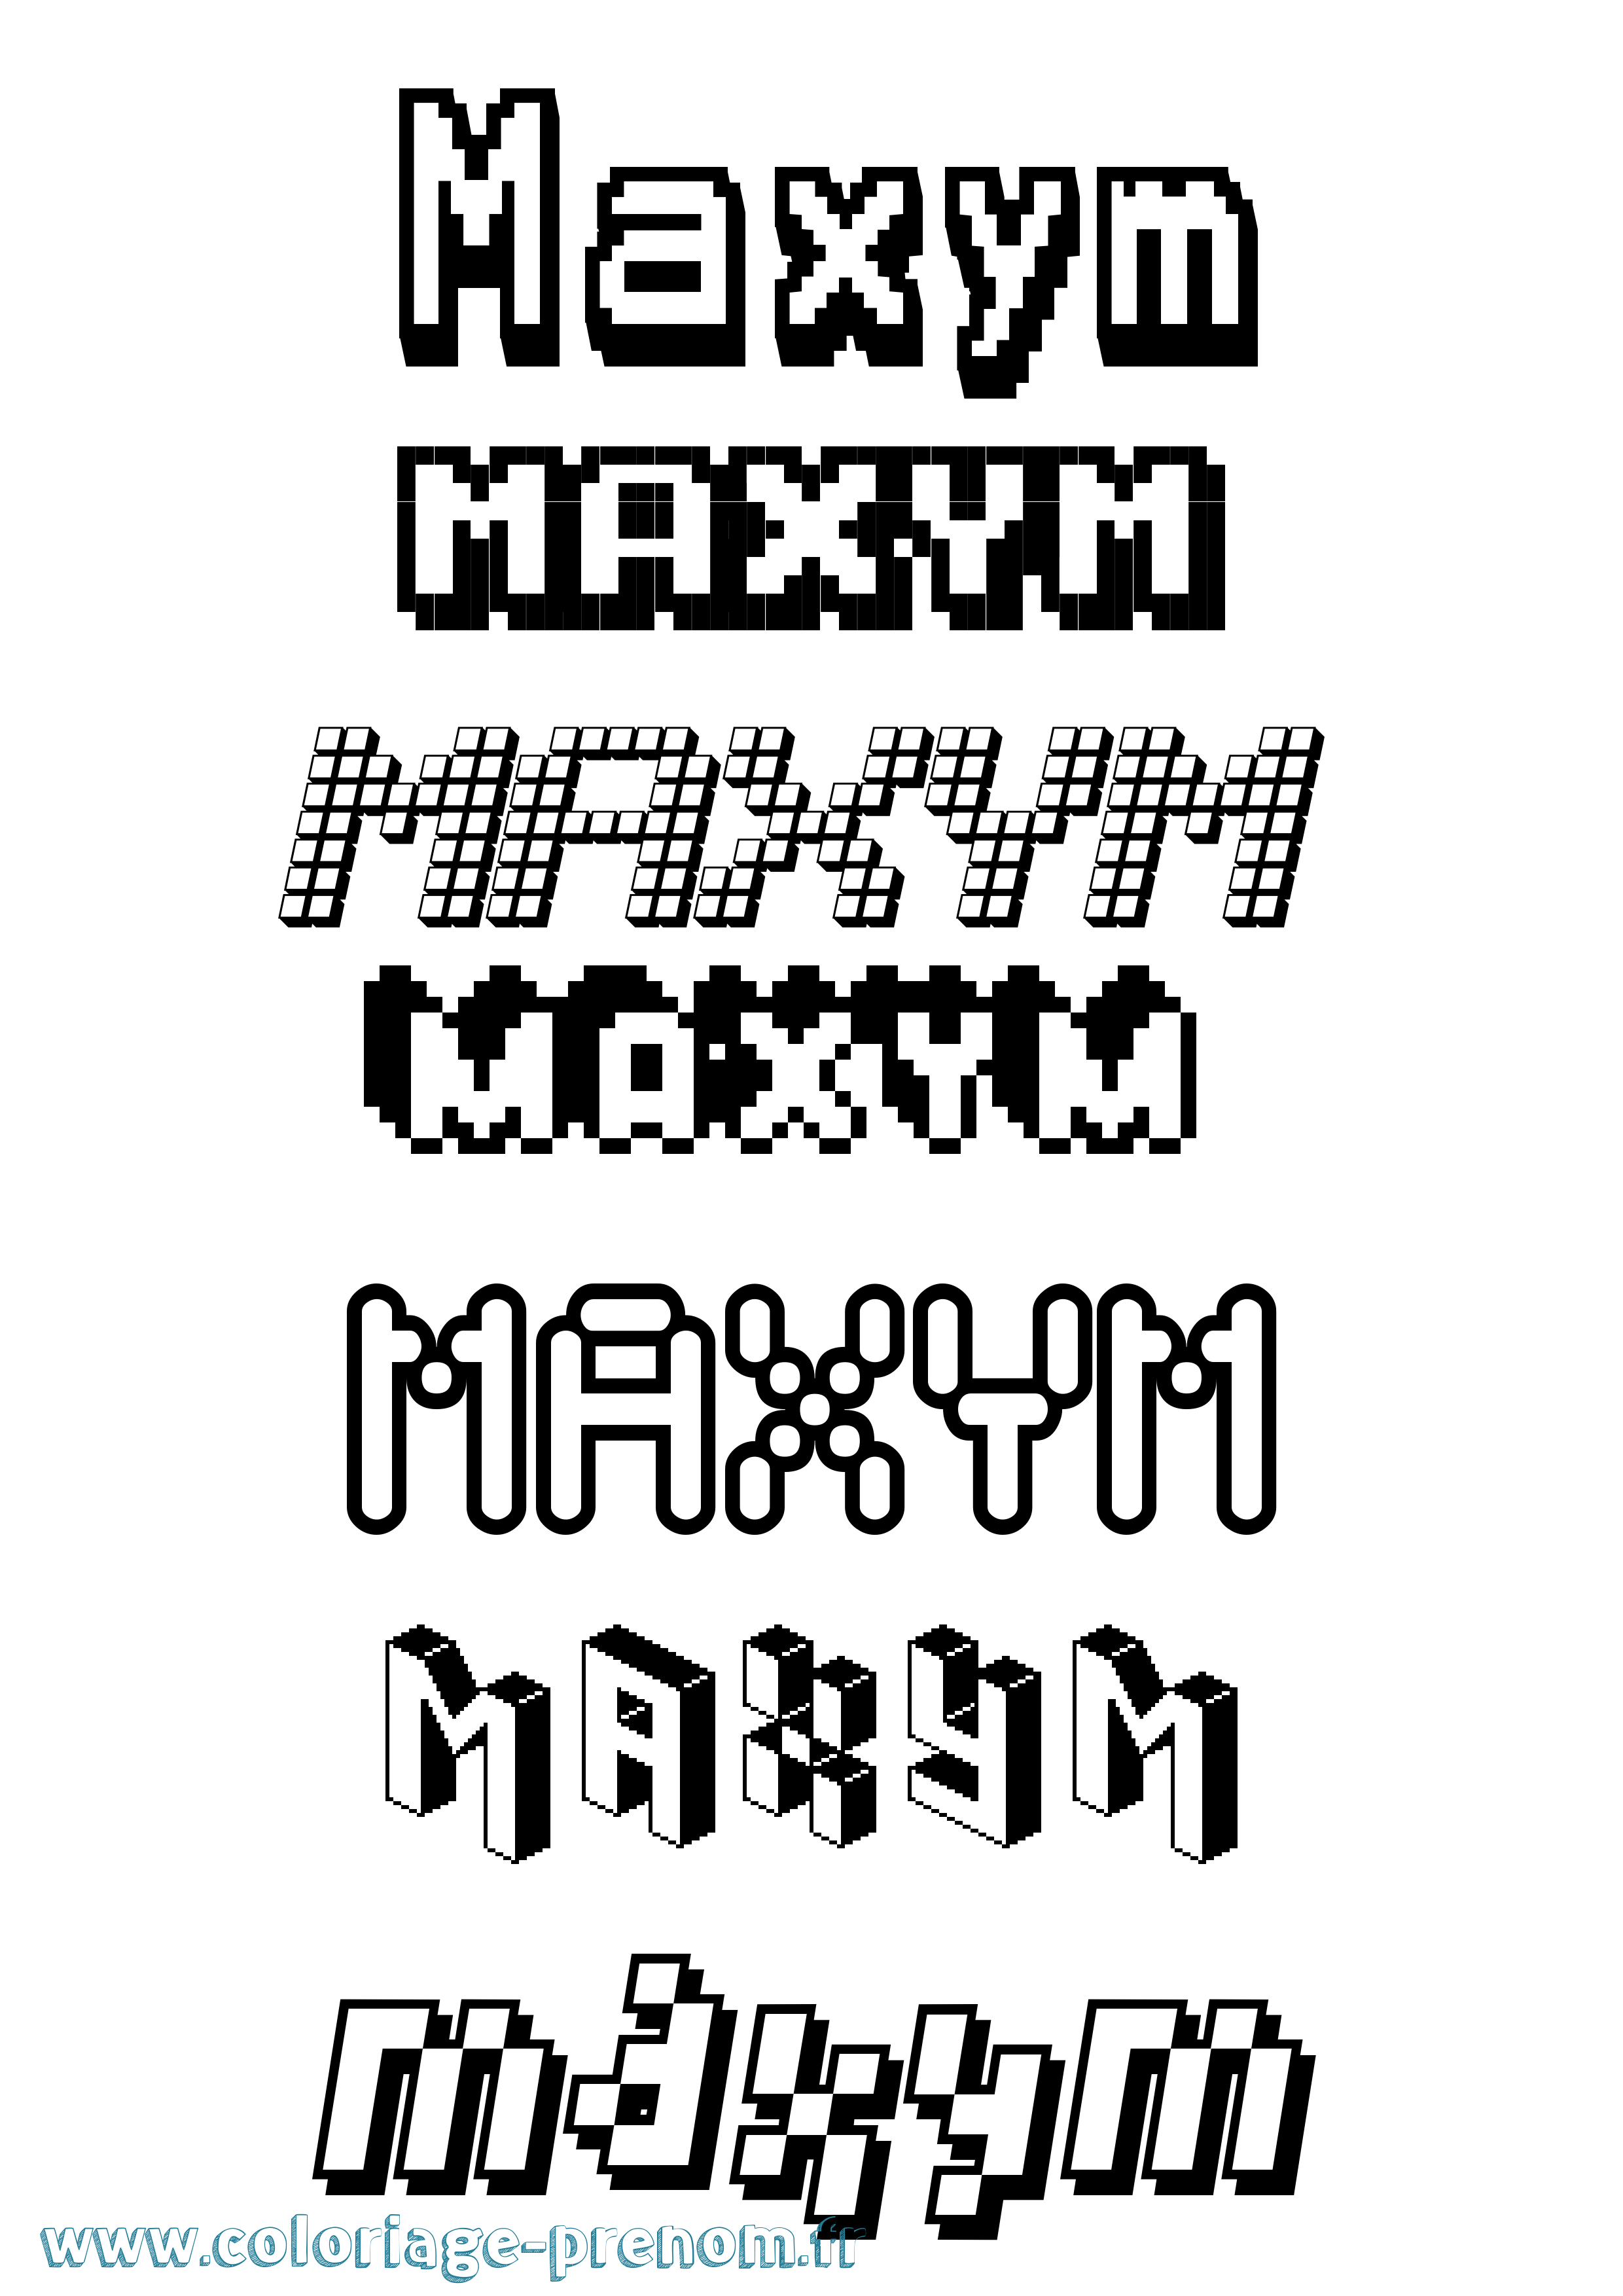 Coloriage prénom Maxym Pixel